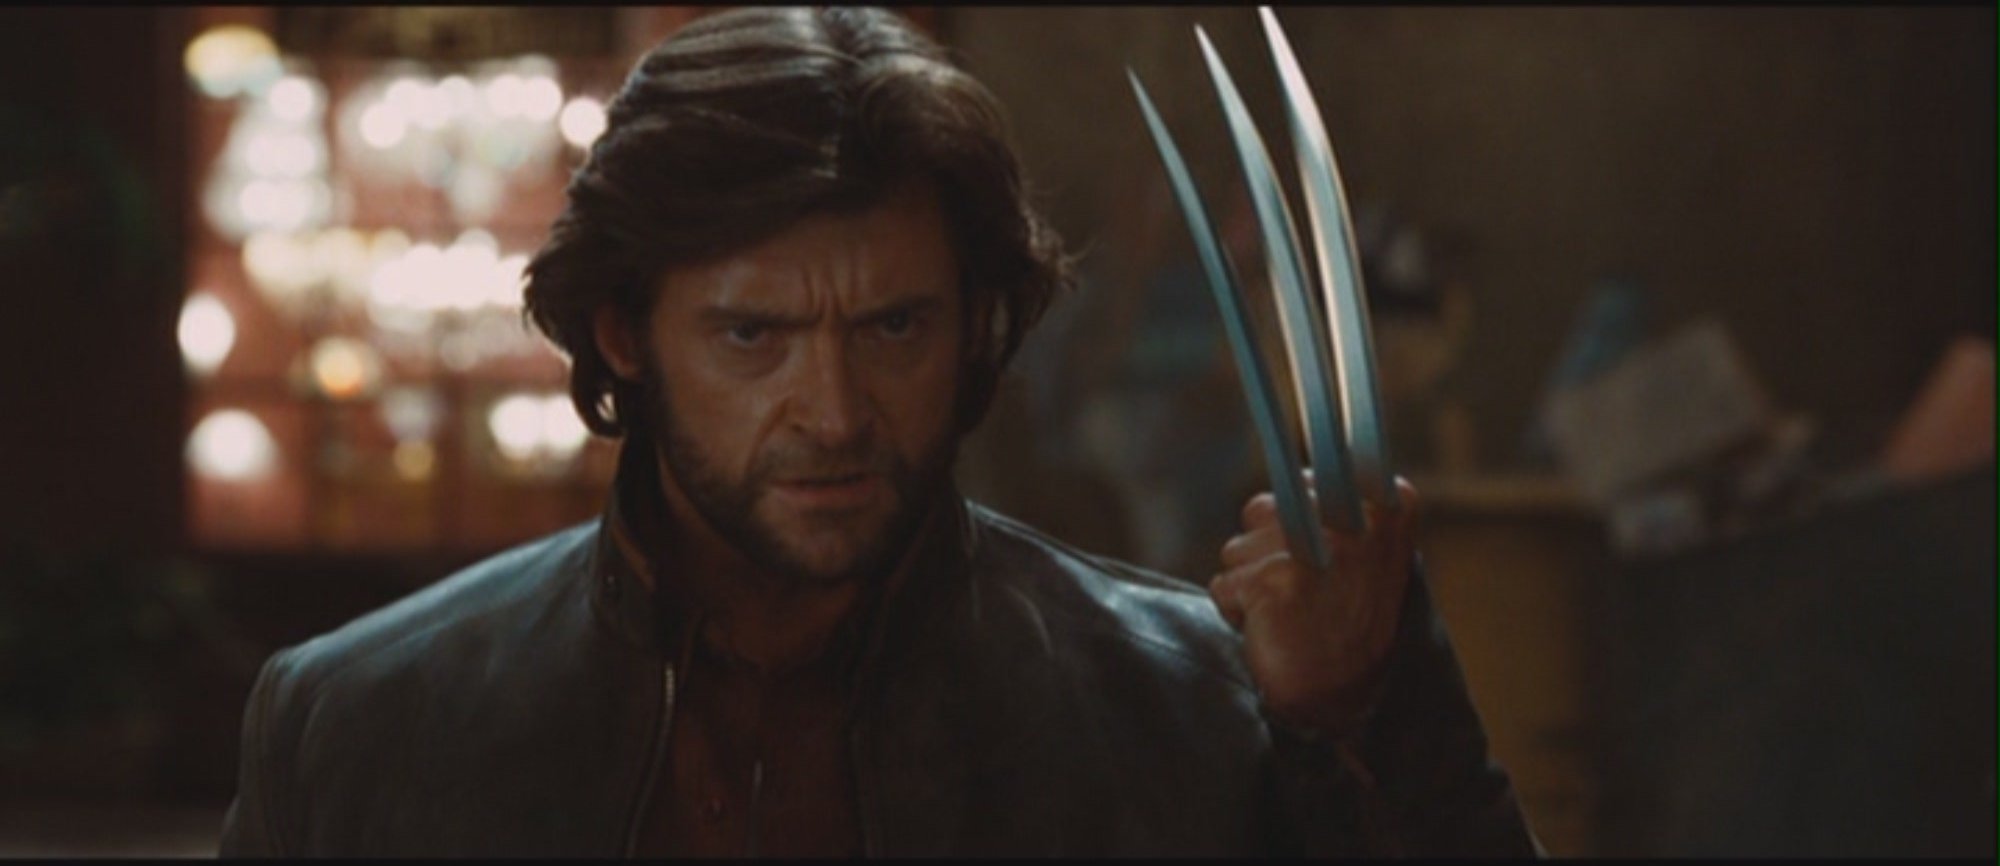 X-Men Origins Wolverine Movie4k